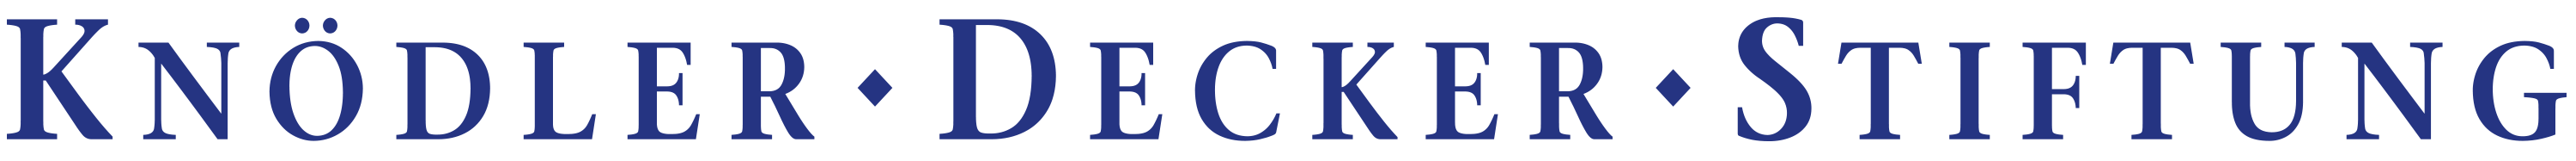 Knödler-Decker-Stiftung